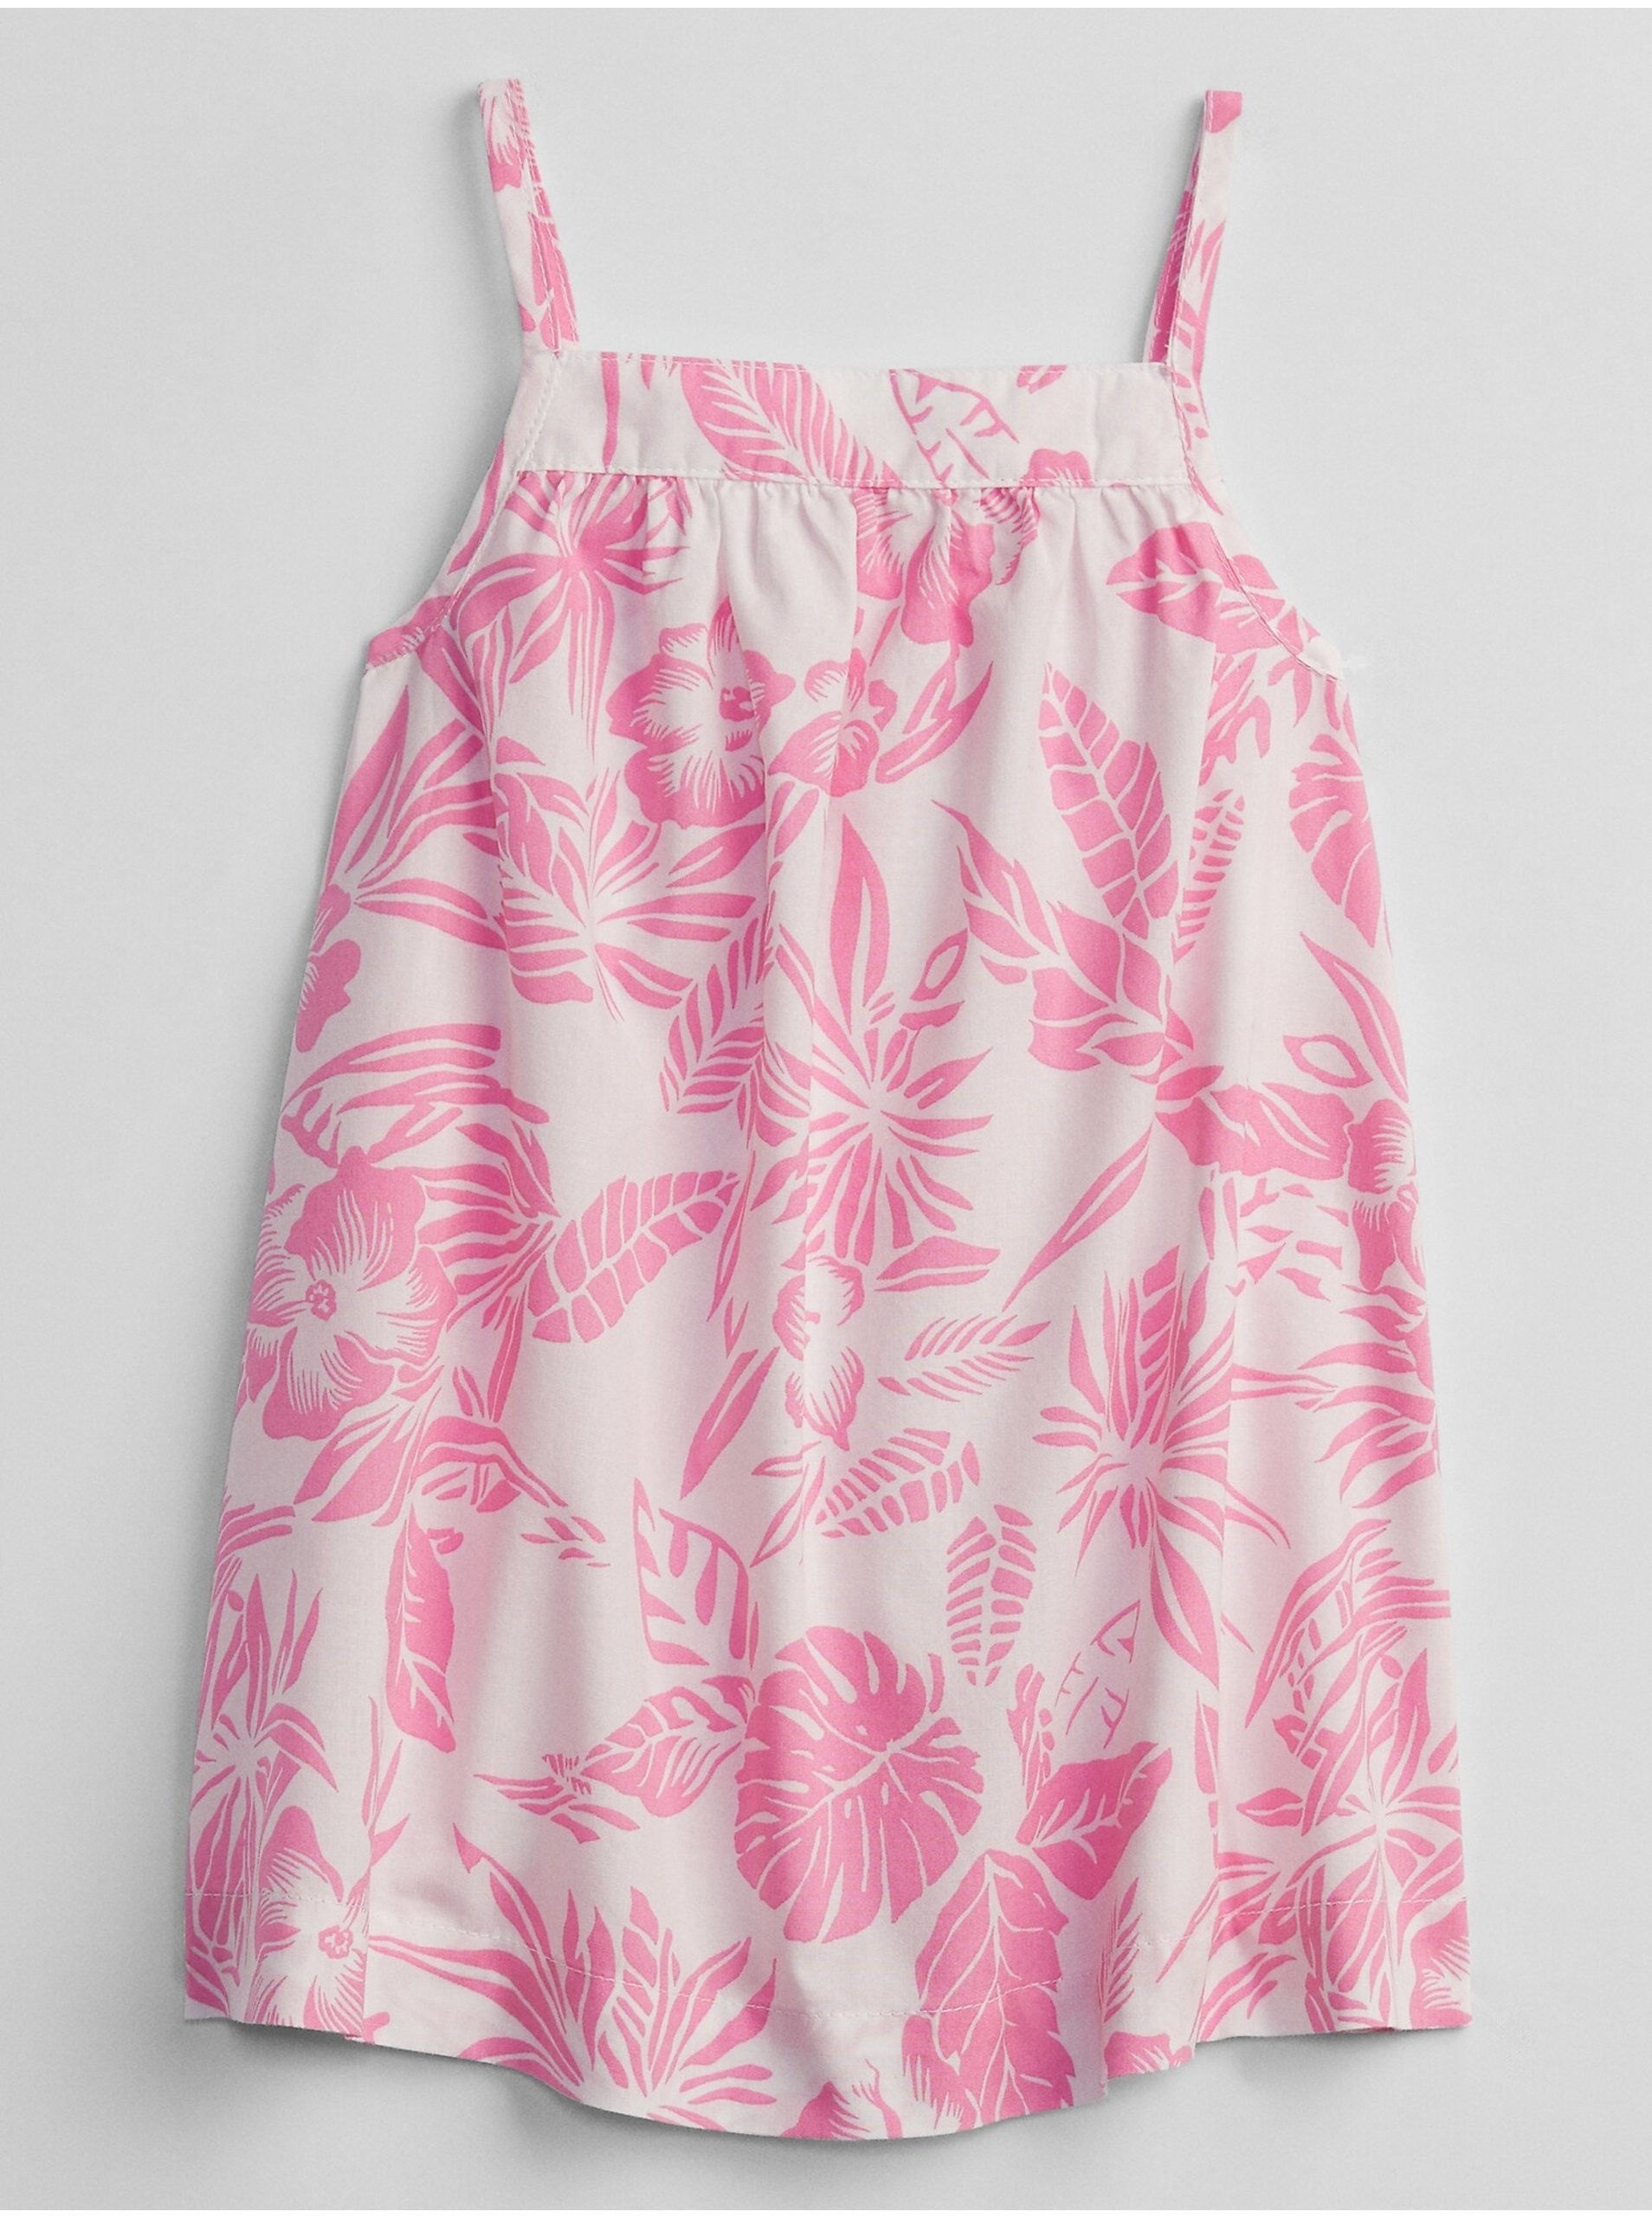 E-shop Bílé holčičí baby šaty floral dress